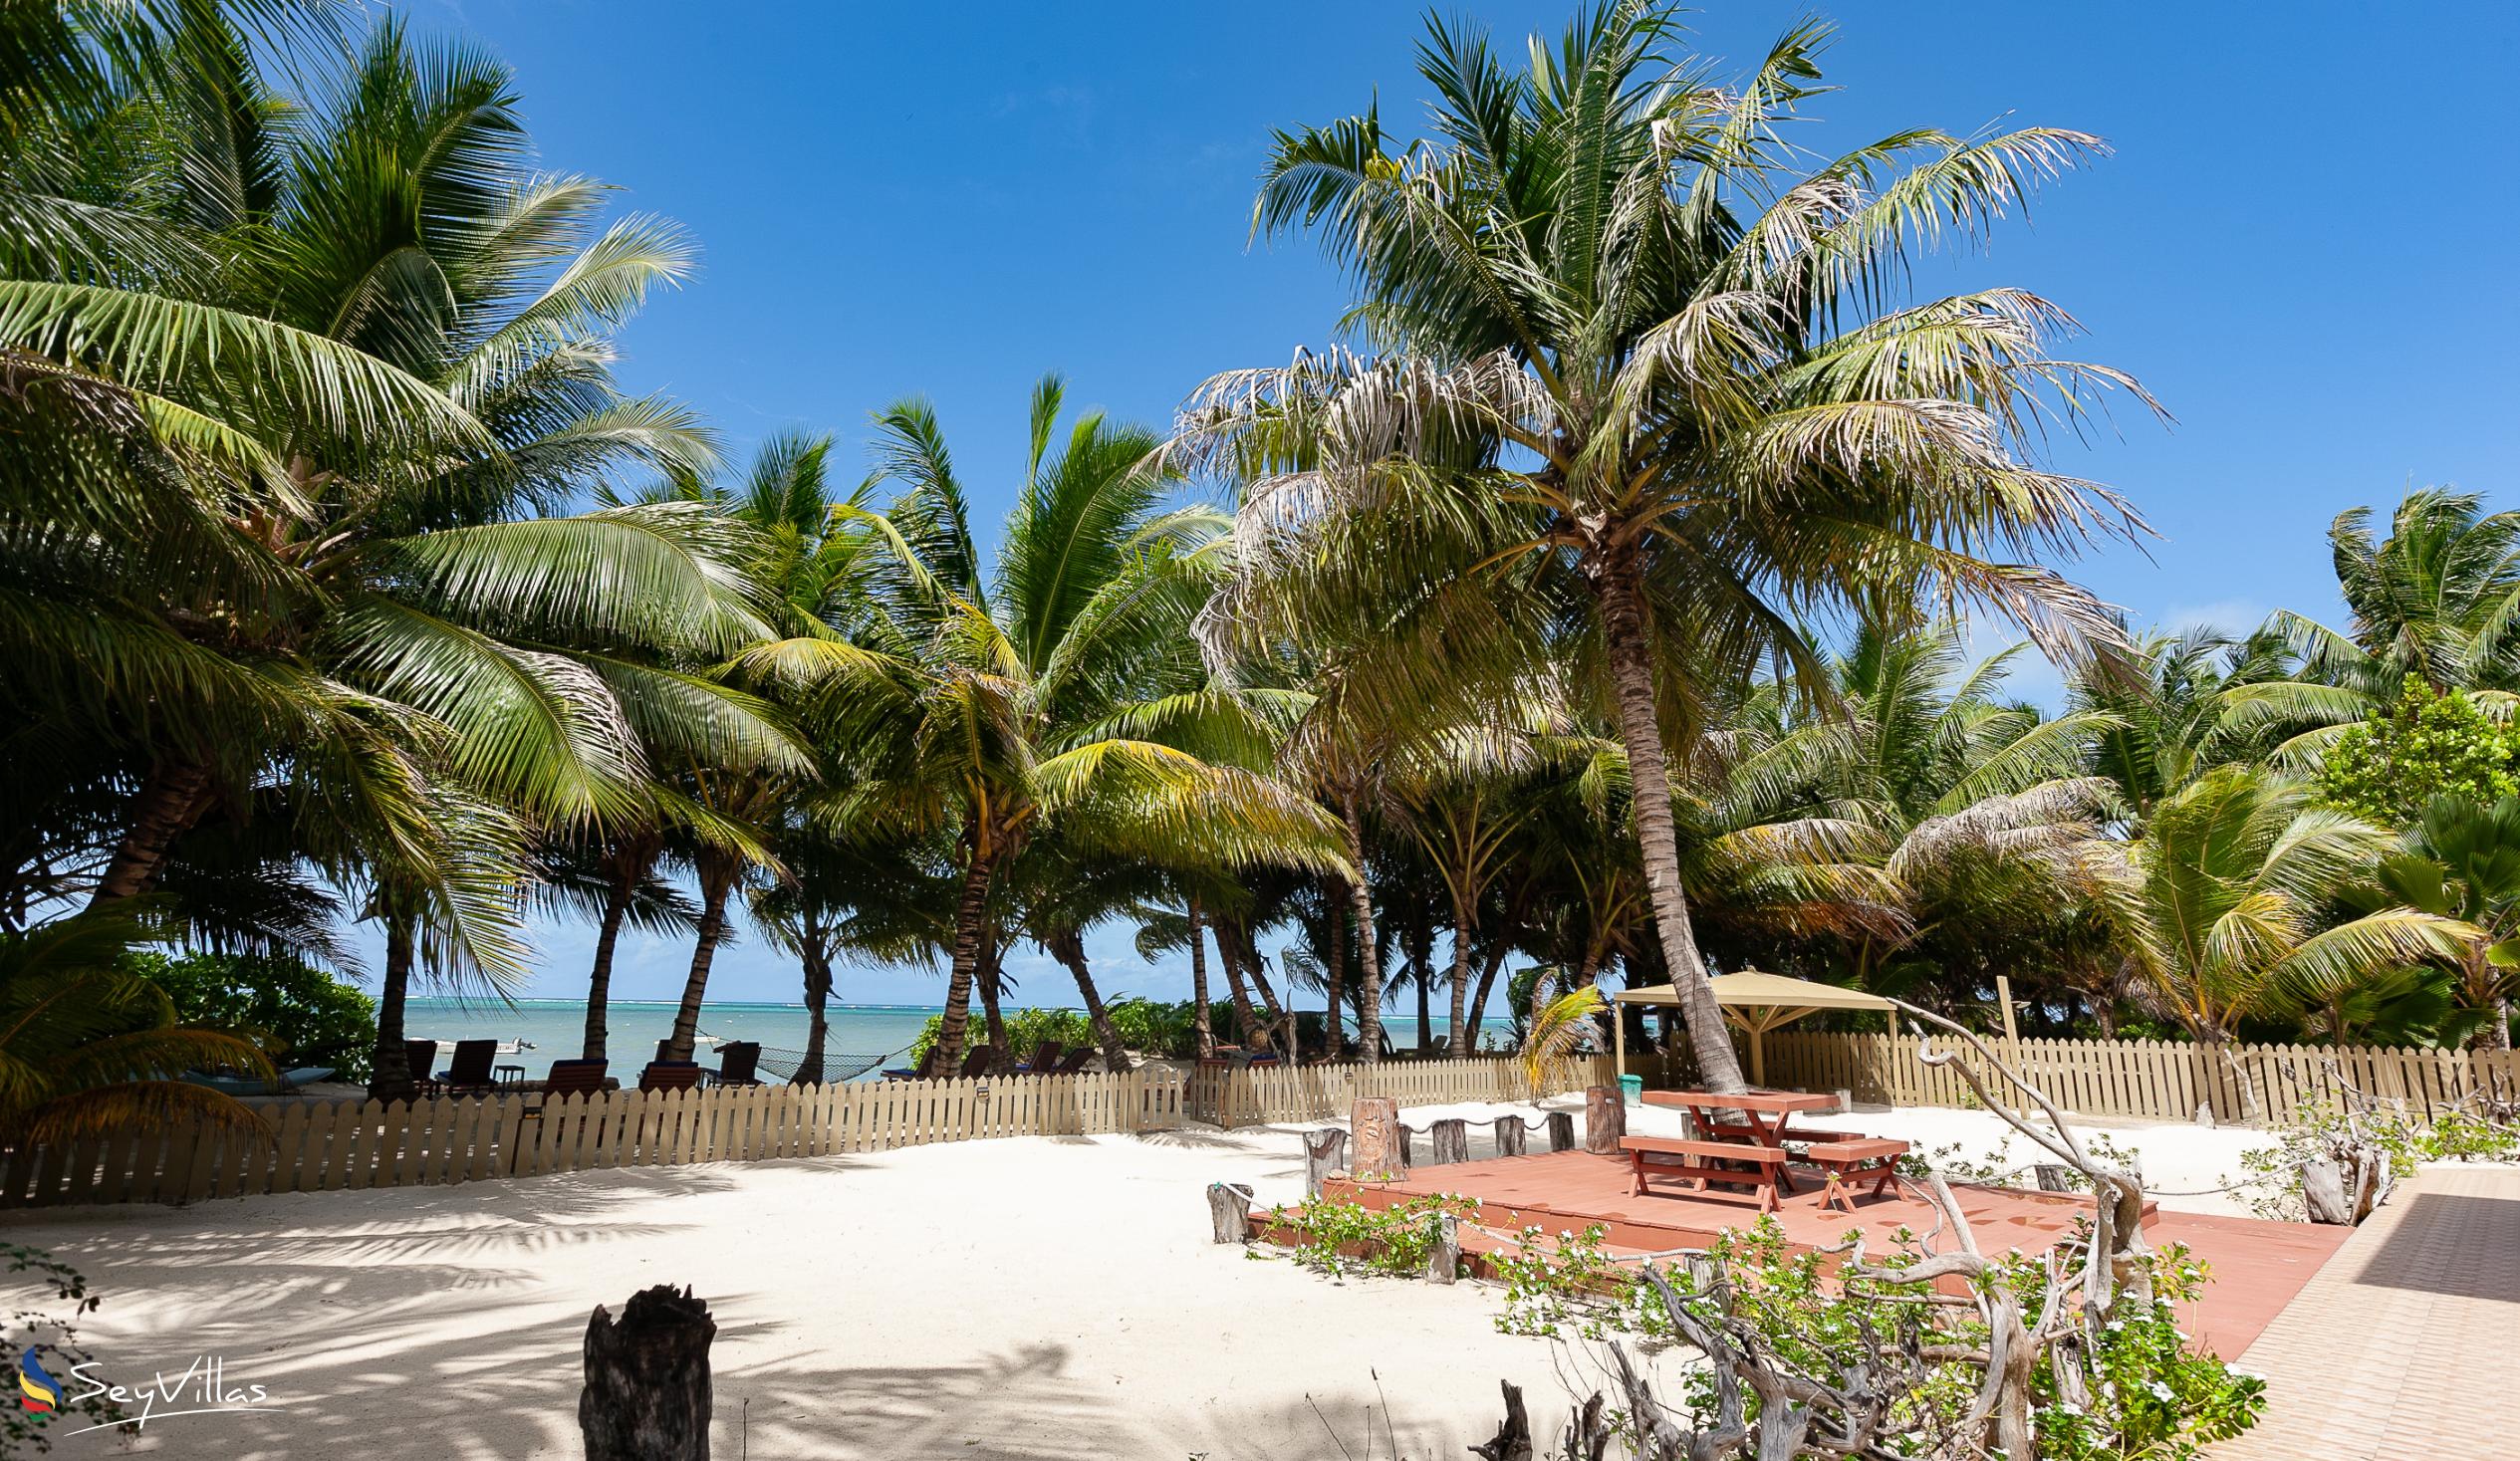 Photo 8: Seashell Beach Villa - Outdoor area - Praslin (Seychelles)